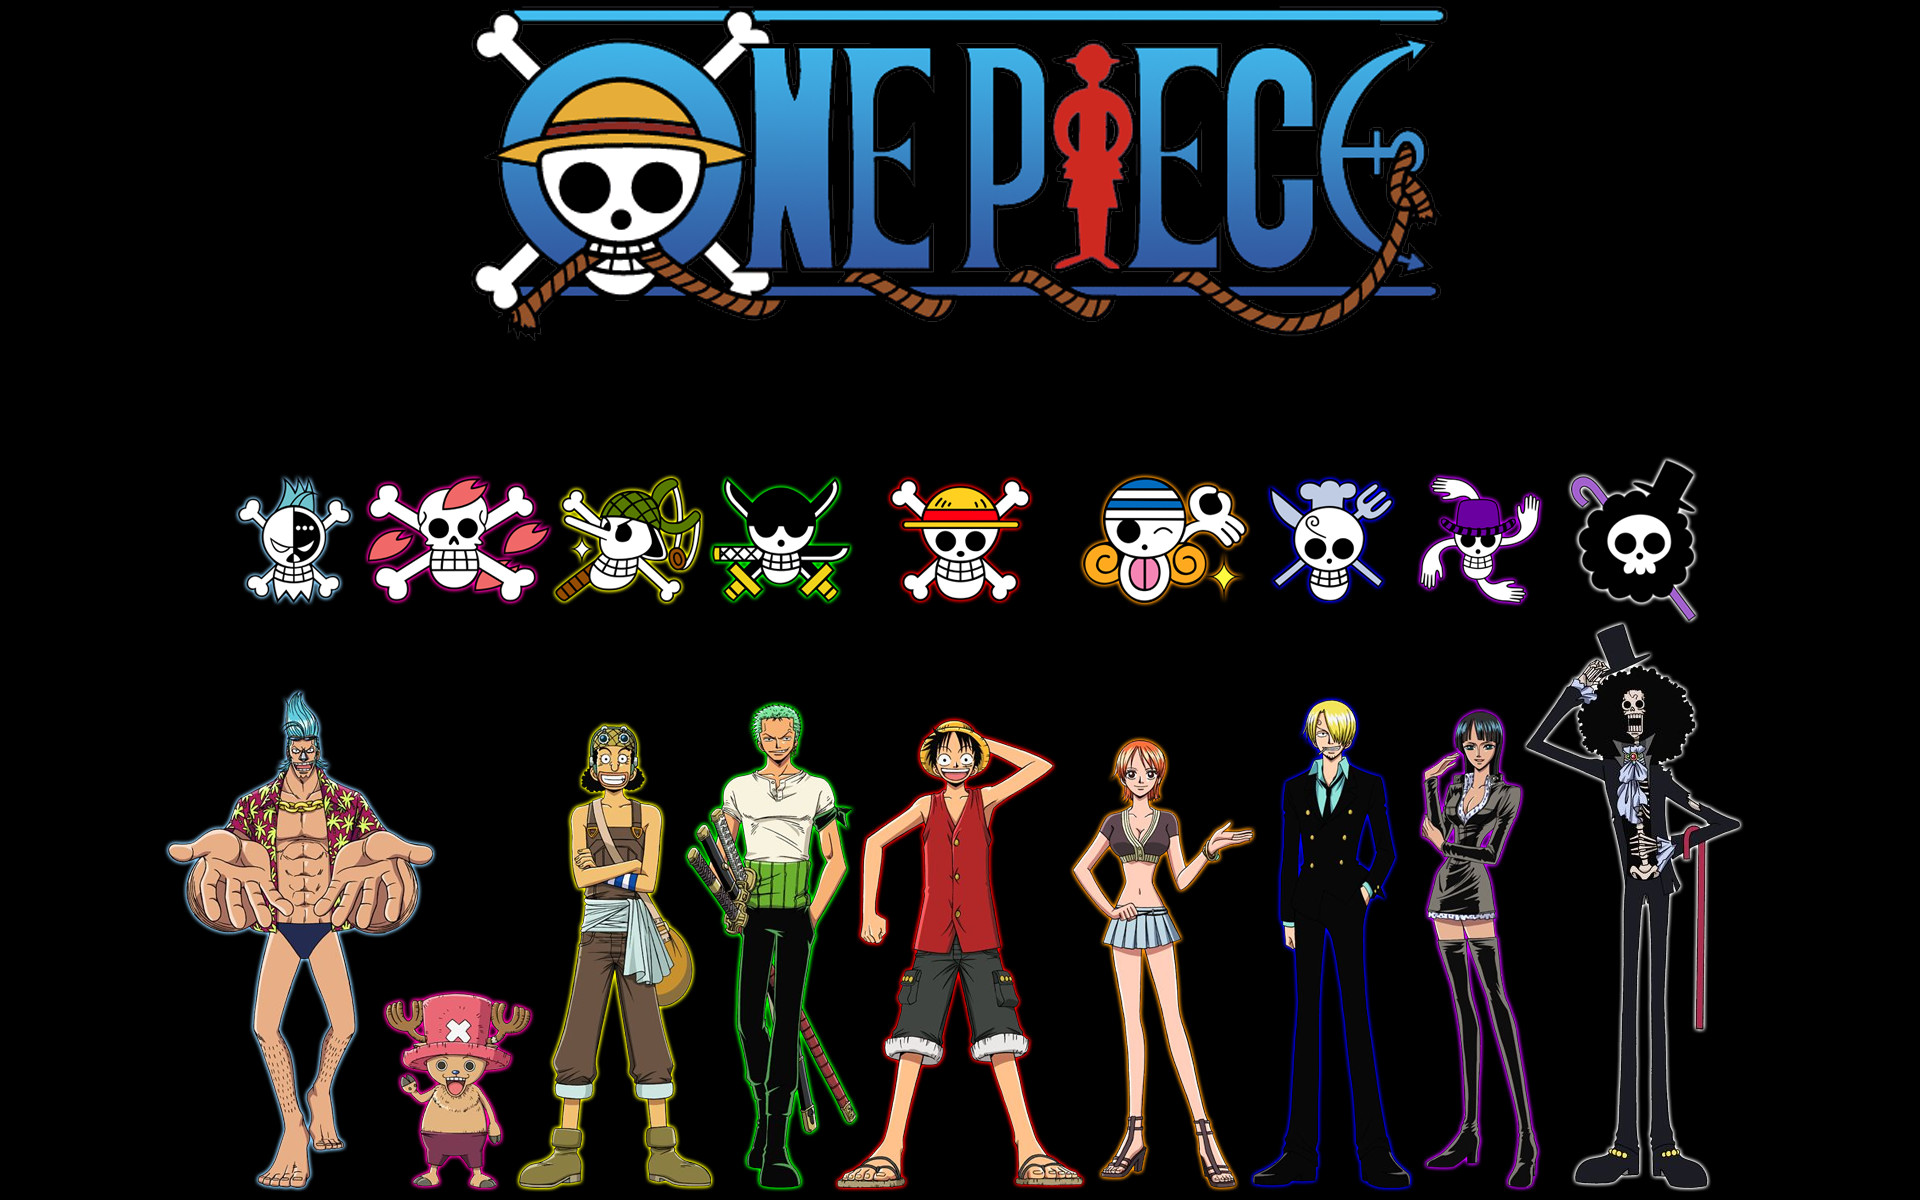 One Piece Wallpapers: Những hình nền One Piece đẹp mắt và sáng tạo sẽ khiến bạn thích thú và không thể rời mắt khỏi màn hình. Hãy cùng chiêm ngưỡng bộ sưu tập hình nền One Piece tuyệt vời này.